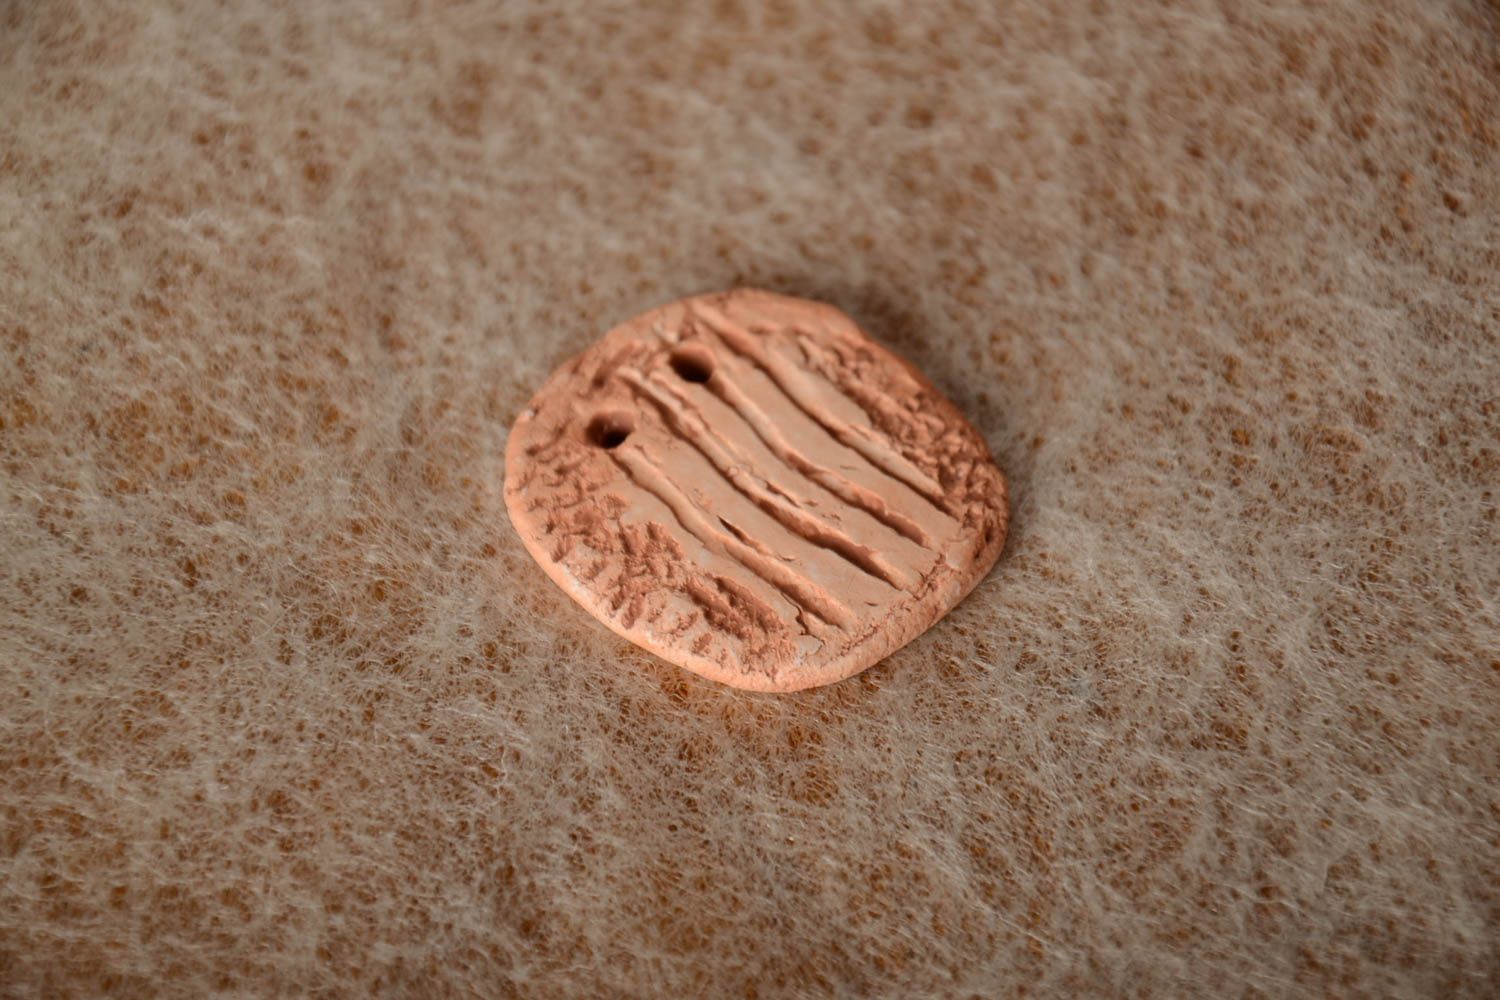 Кулон из глины ручной работы объемный красивый расписанный пигментами заготовка фото 1